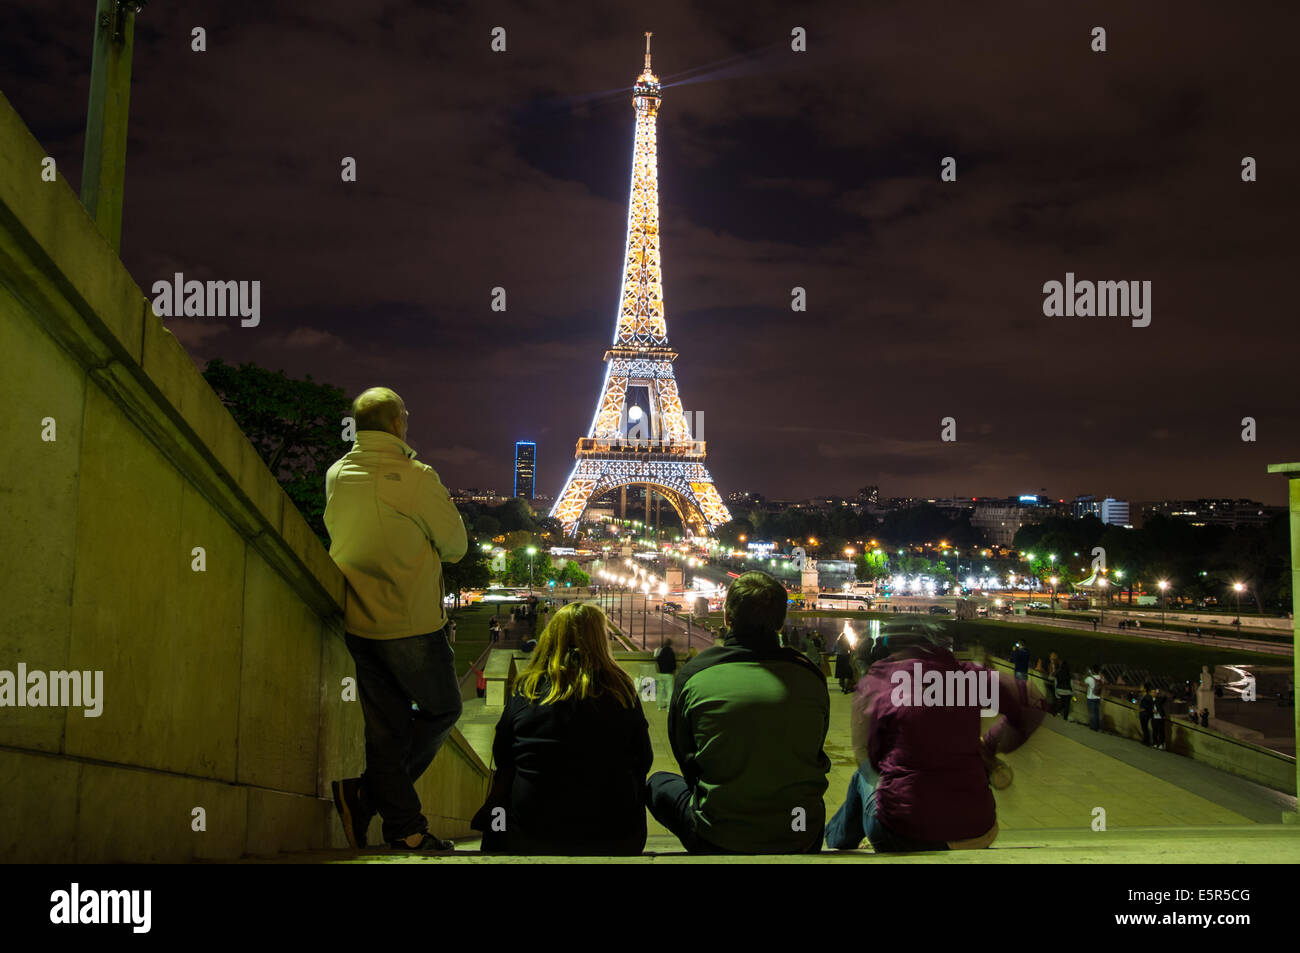 Vue de nuit de la Tour Eiffel, du Trocadéro, Paris, France Banque D'Images